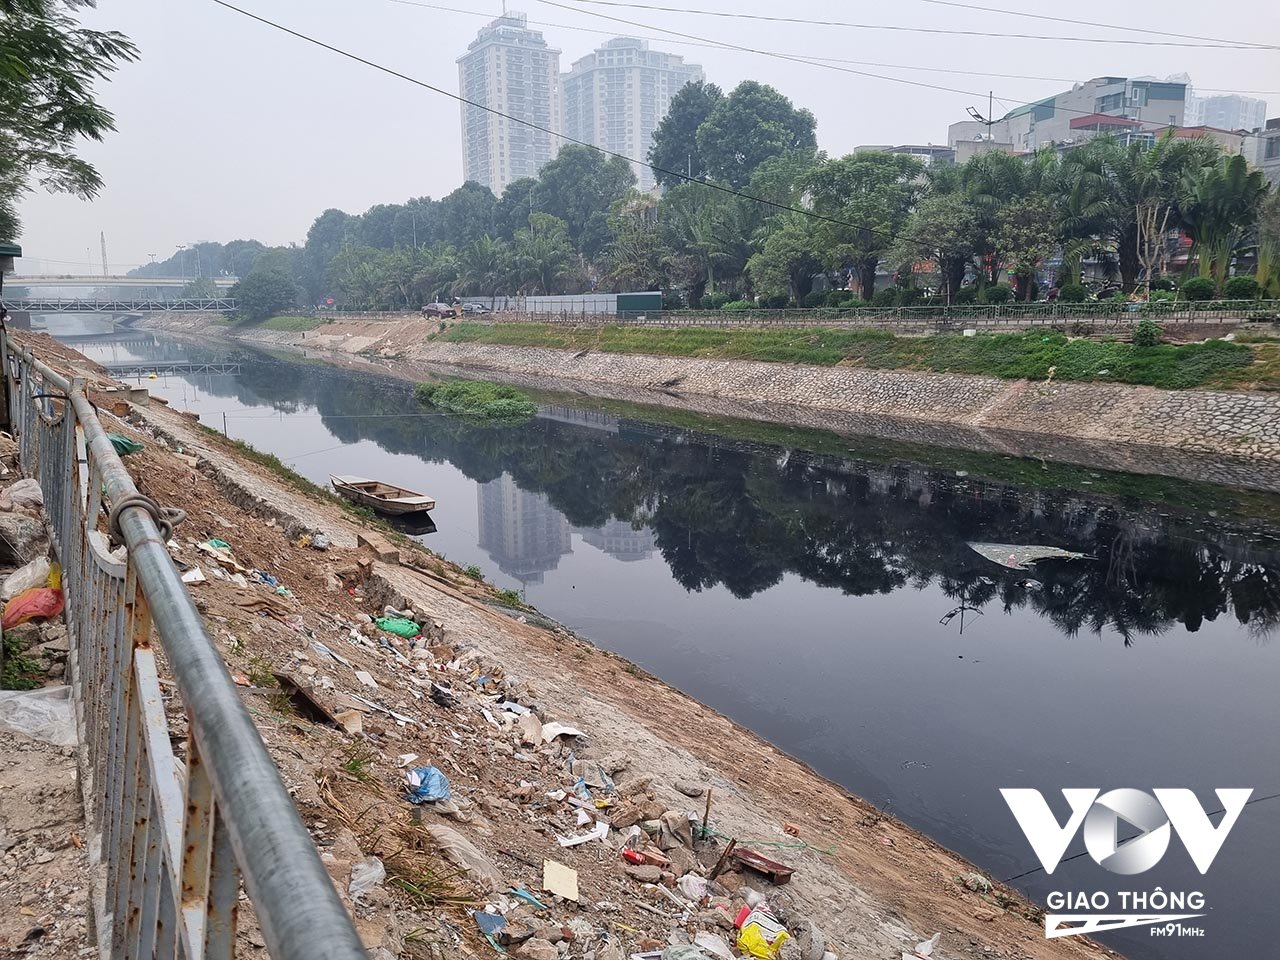 Chính quyền thành phố đã có nhiều dự án làm sạch sông Tô Lịch, nhưng tất cả chỉ dừng lại ở đề xuất hoặc thí điểm.